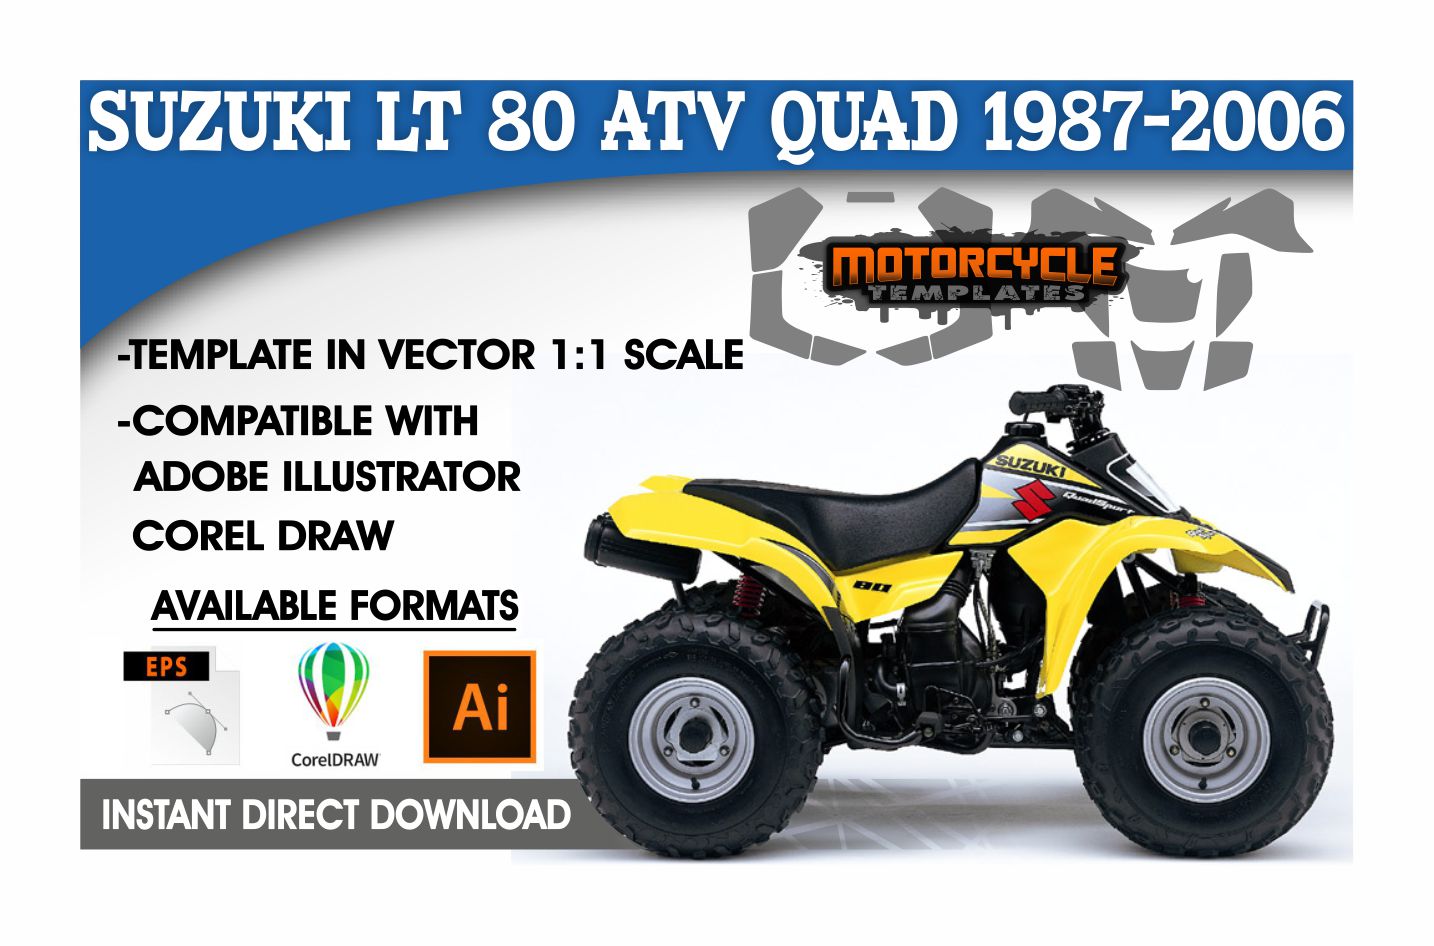 SUZUKI LT 80 ATV QUAD 1987-2006